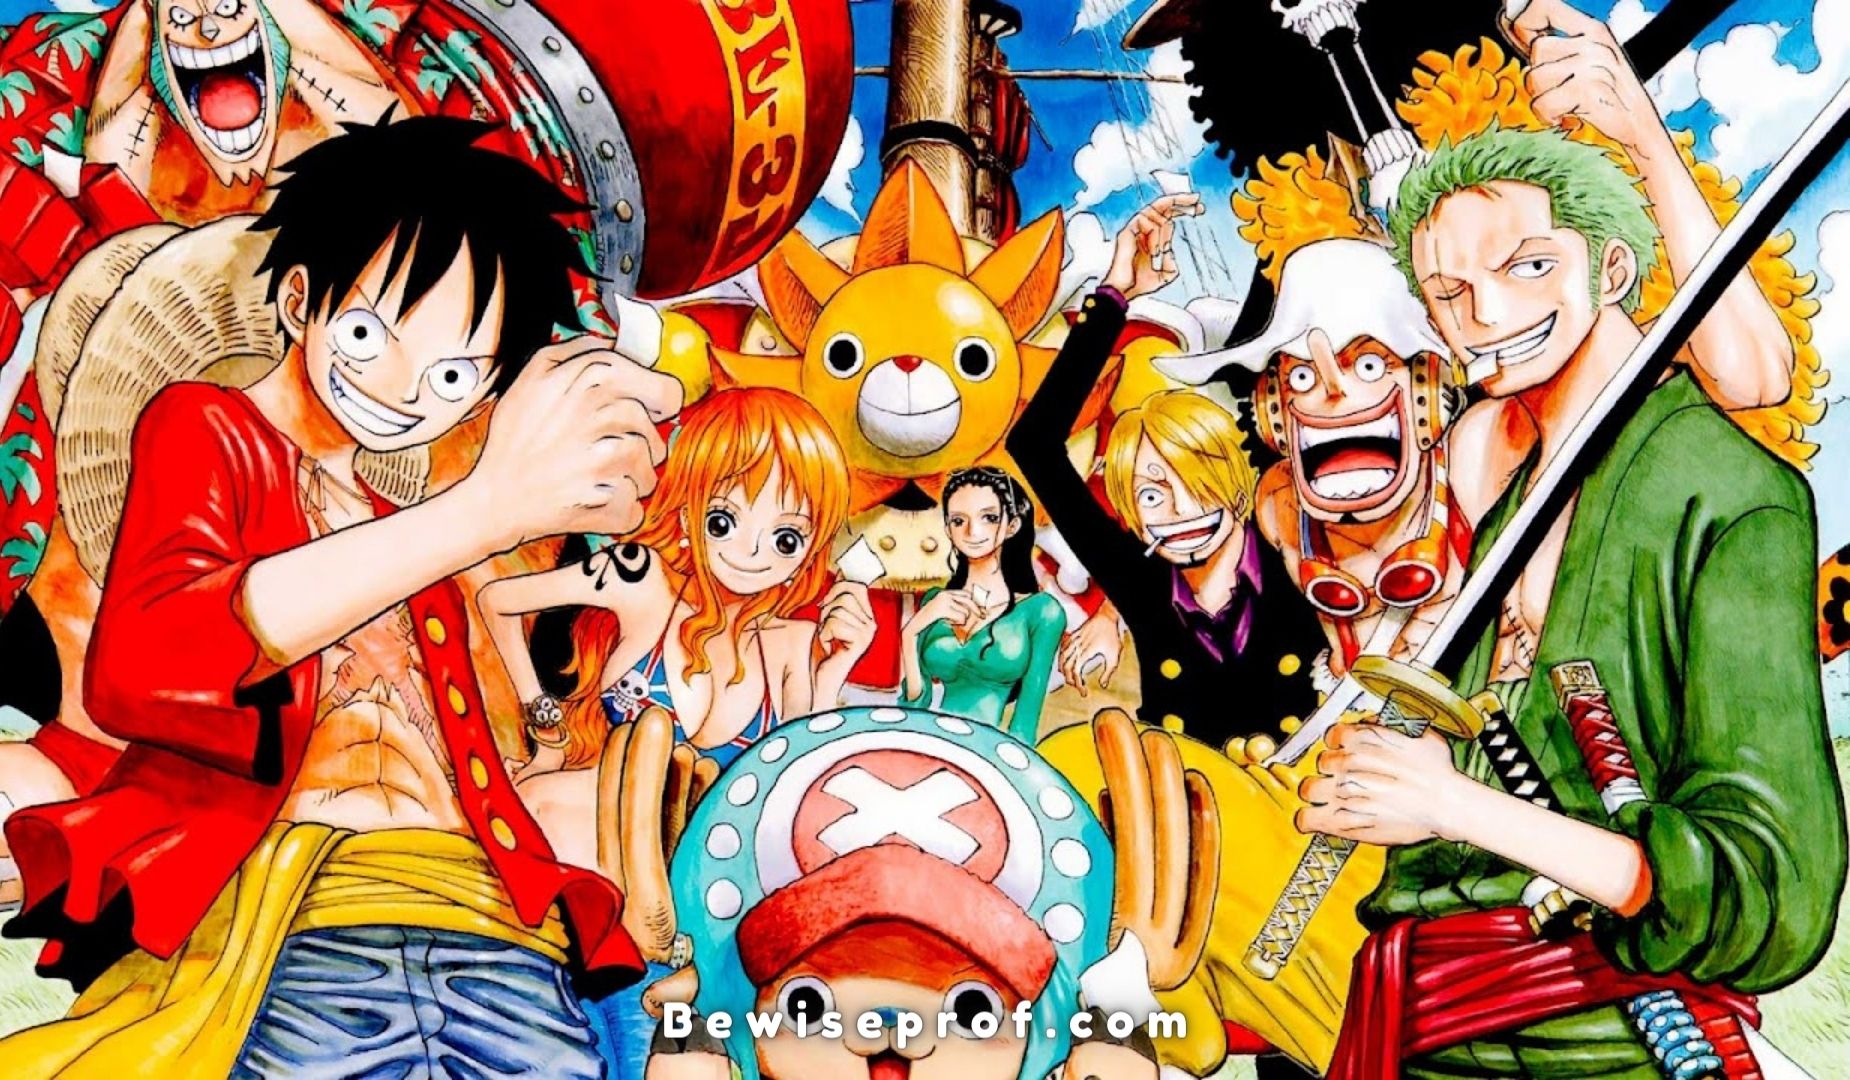 បញ្ជីចាក់បំពេញមួយដុំ និងមគ្គុទ្ទេសក៍គំនូរជីវចល One Piece